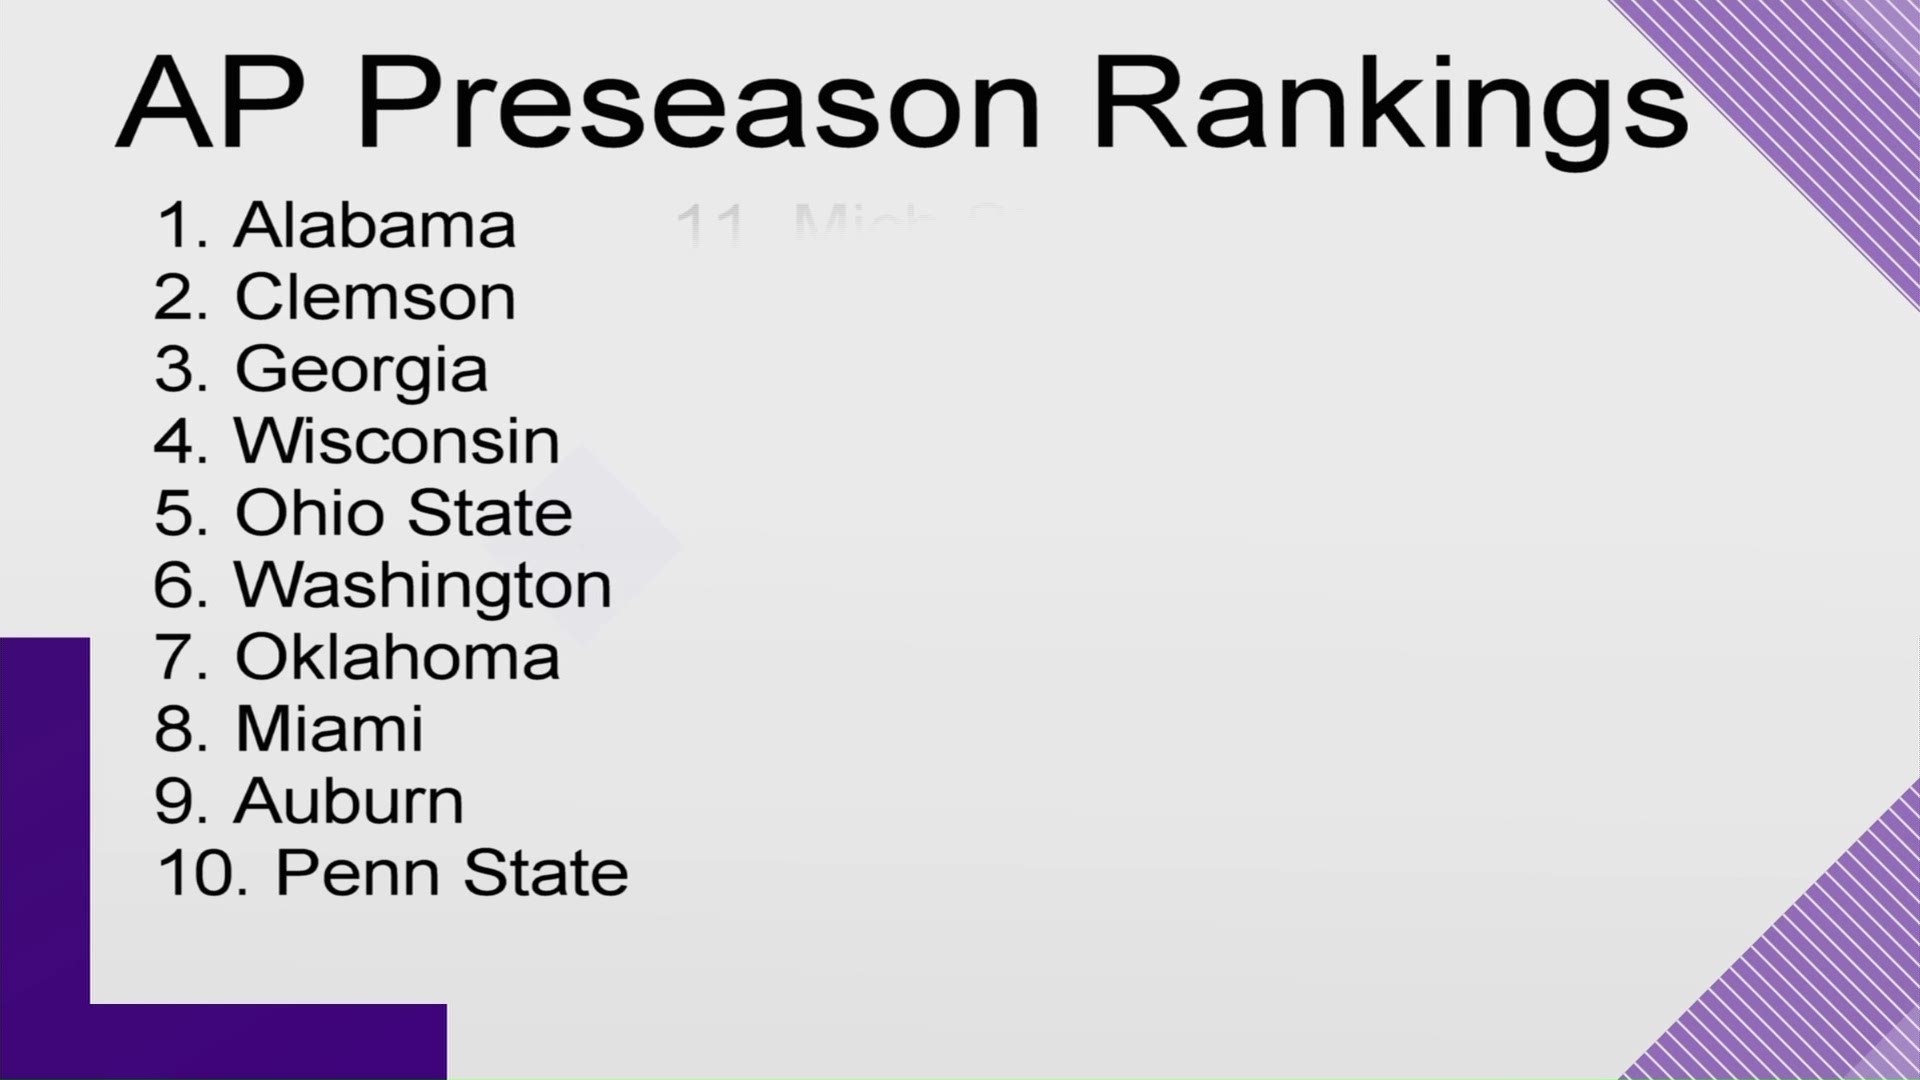 Texas is #23 in the AP preseason rankings.